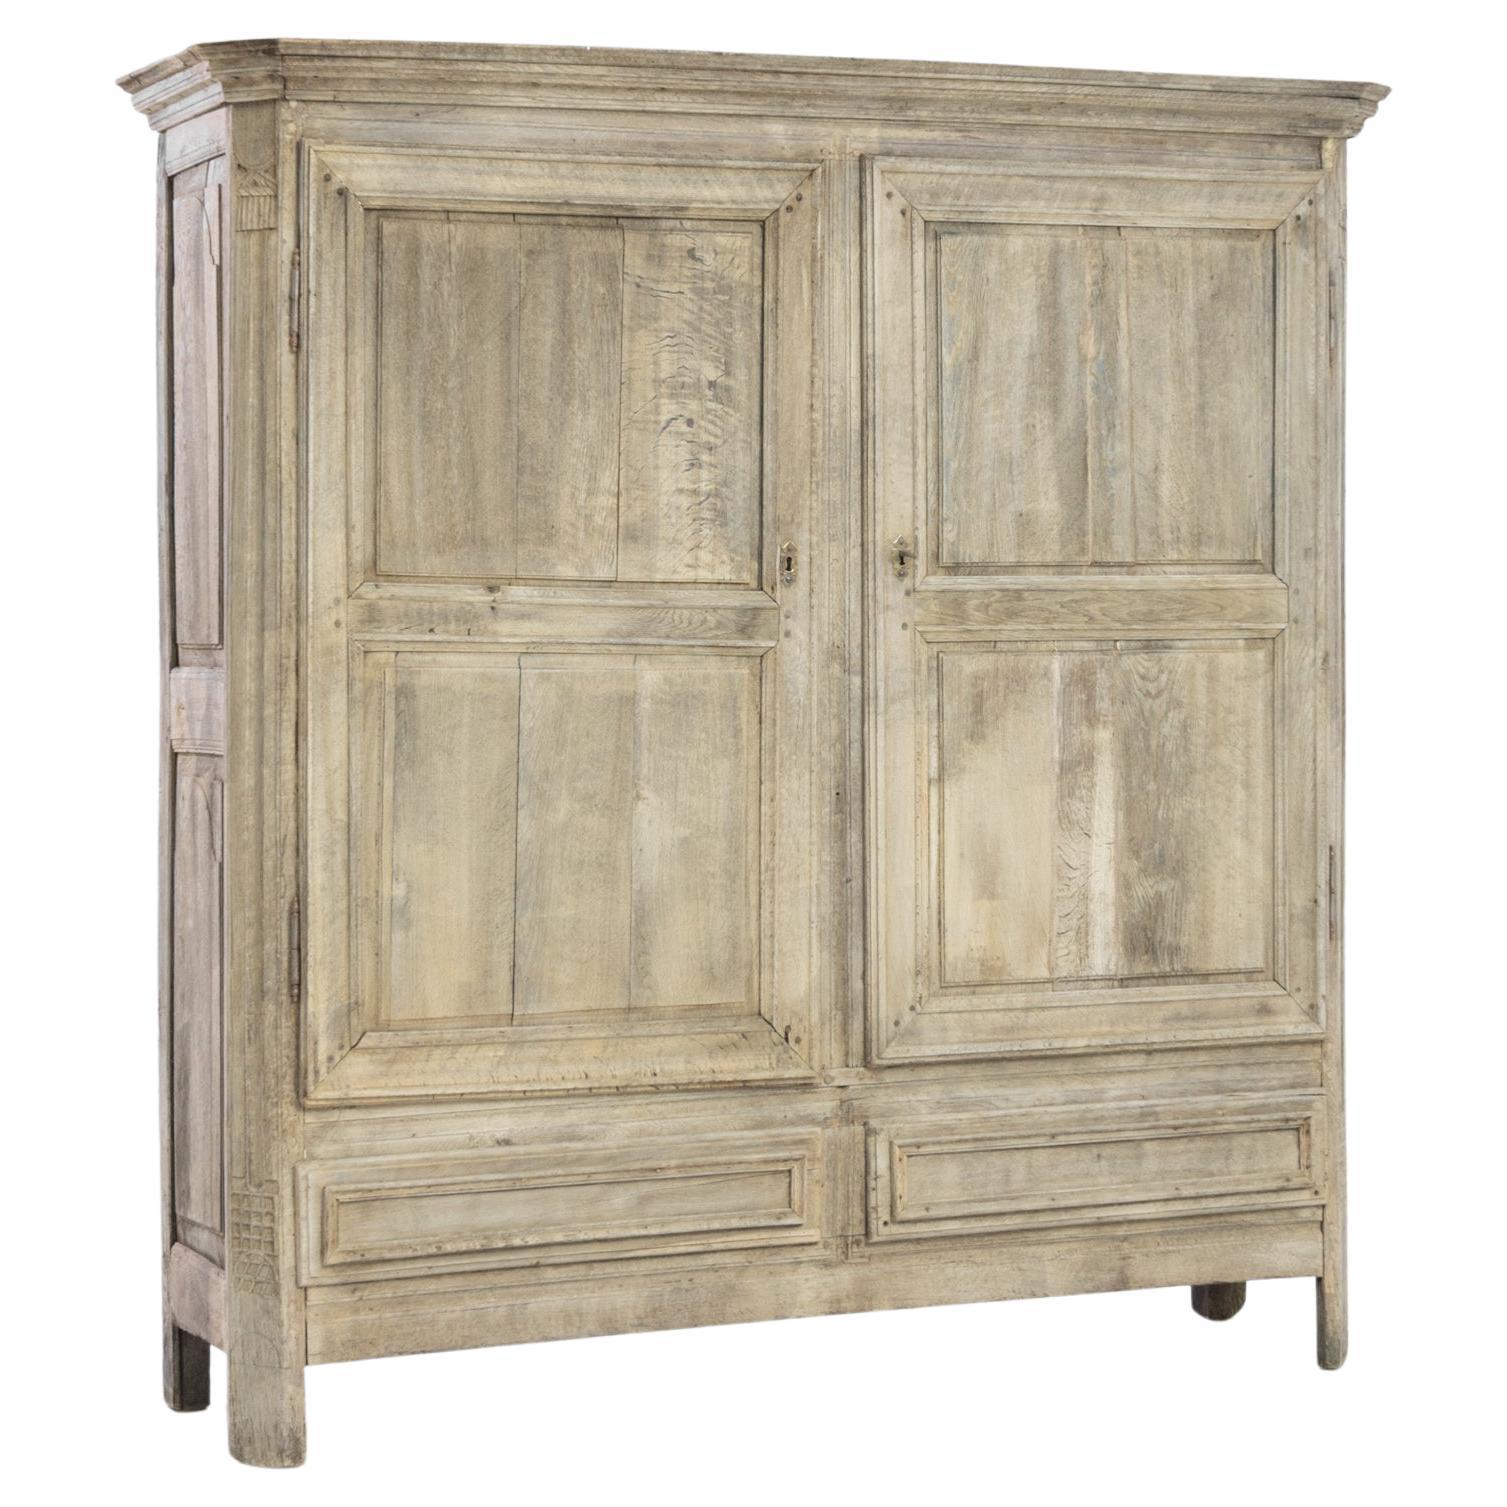 1800s French Oak Cabinet